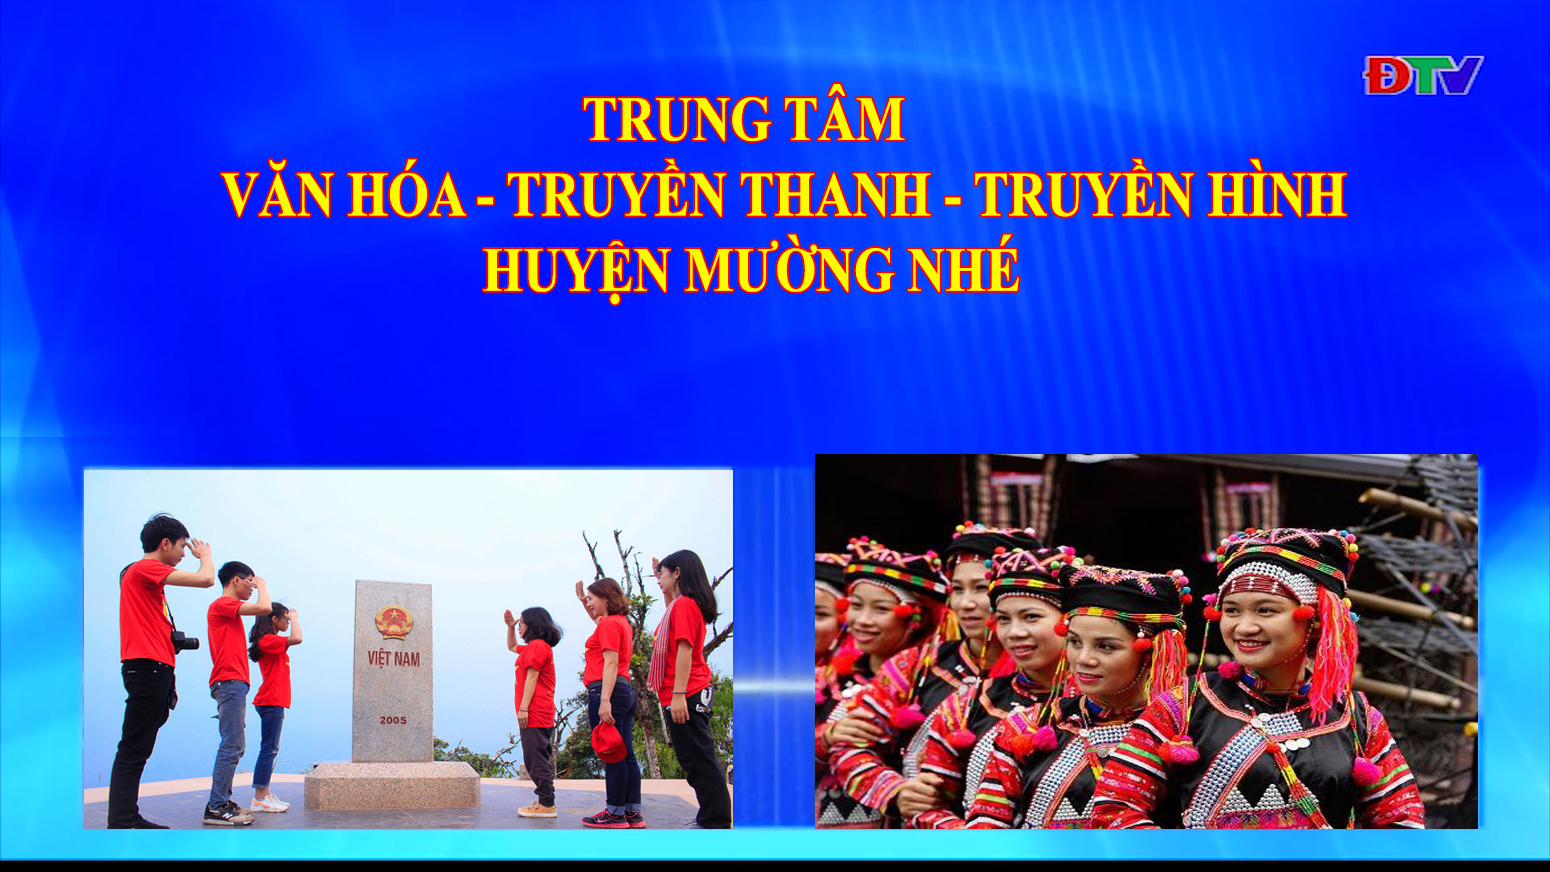 Trung tâm Văn hóa Truyền thanh Truyền hình huyện Mường Nhé (Ngày 27-8-2020)